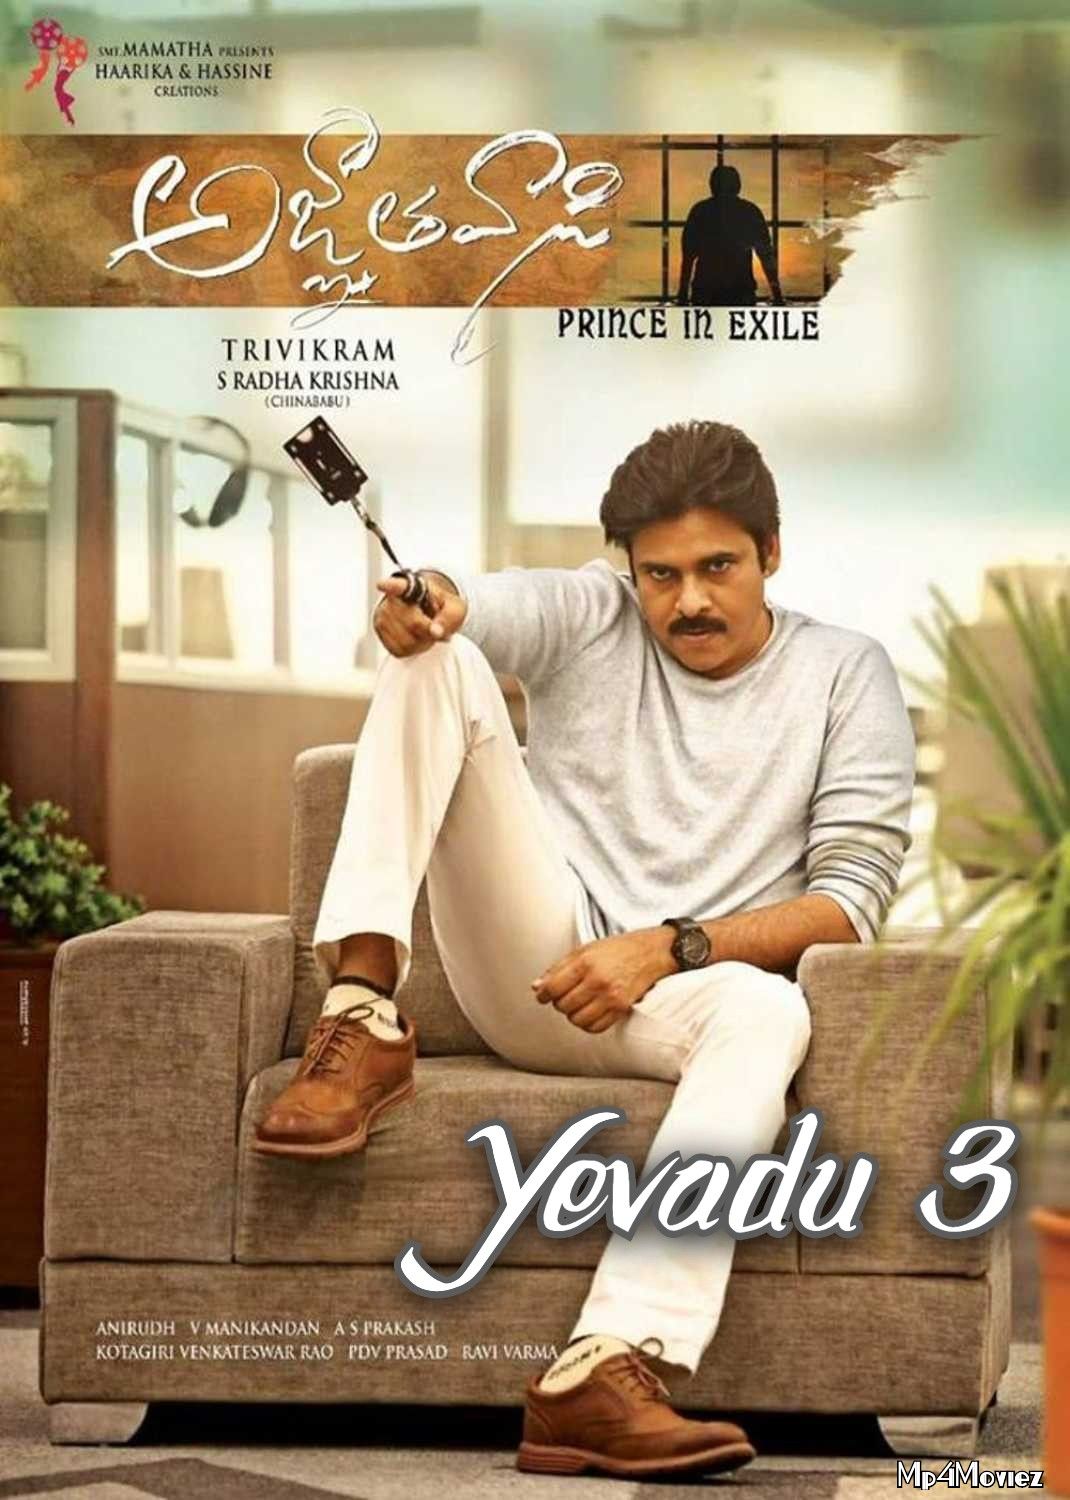 Yevadu 3 (Agnyaathavaasi) 2018 Hindi Dubbed Movie download full movie